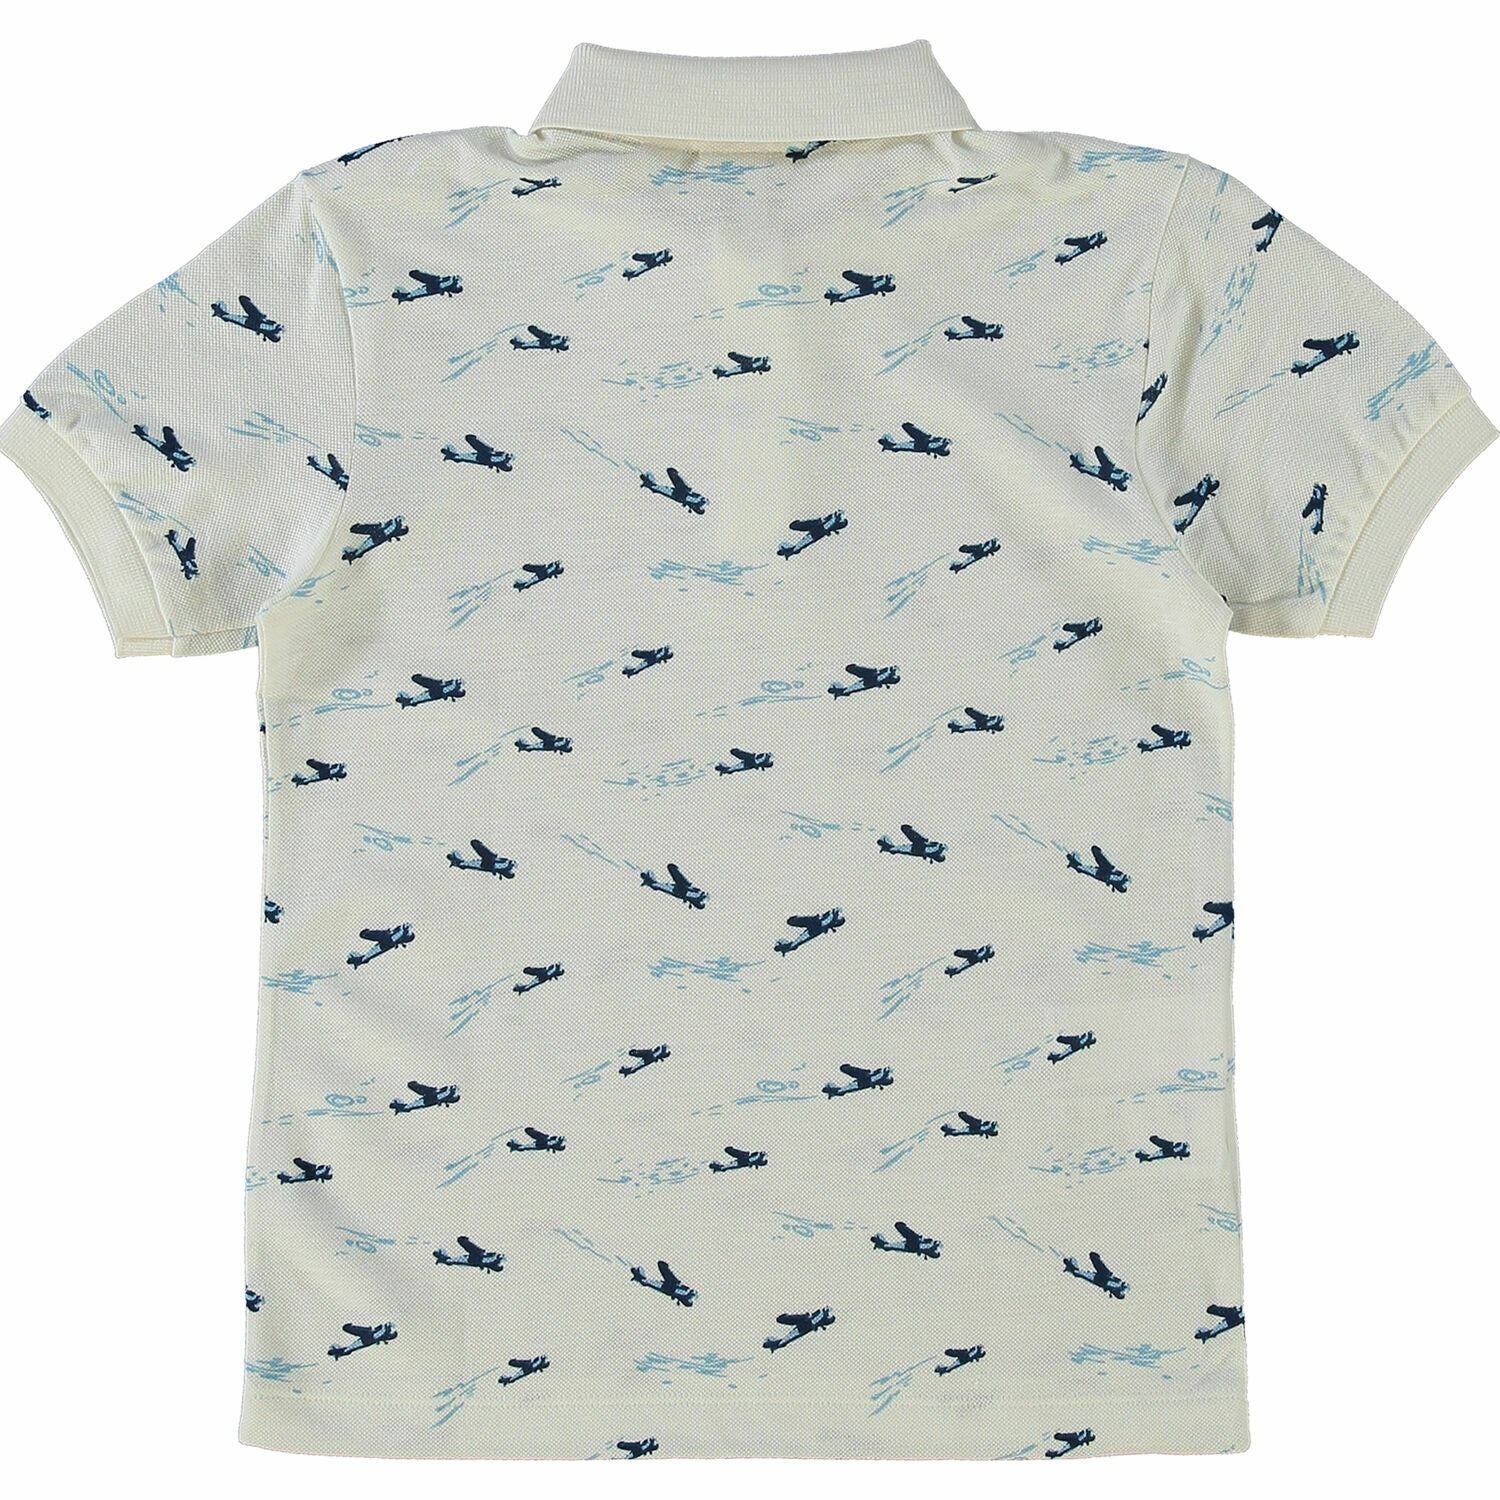 LACOSTE Boys' Kids' Linen Blend Polo Shirt, White/Blue Aeroplane Print, 10 years